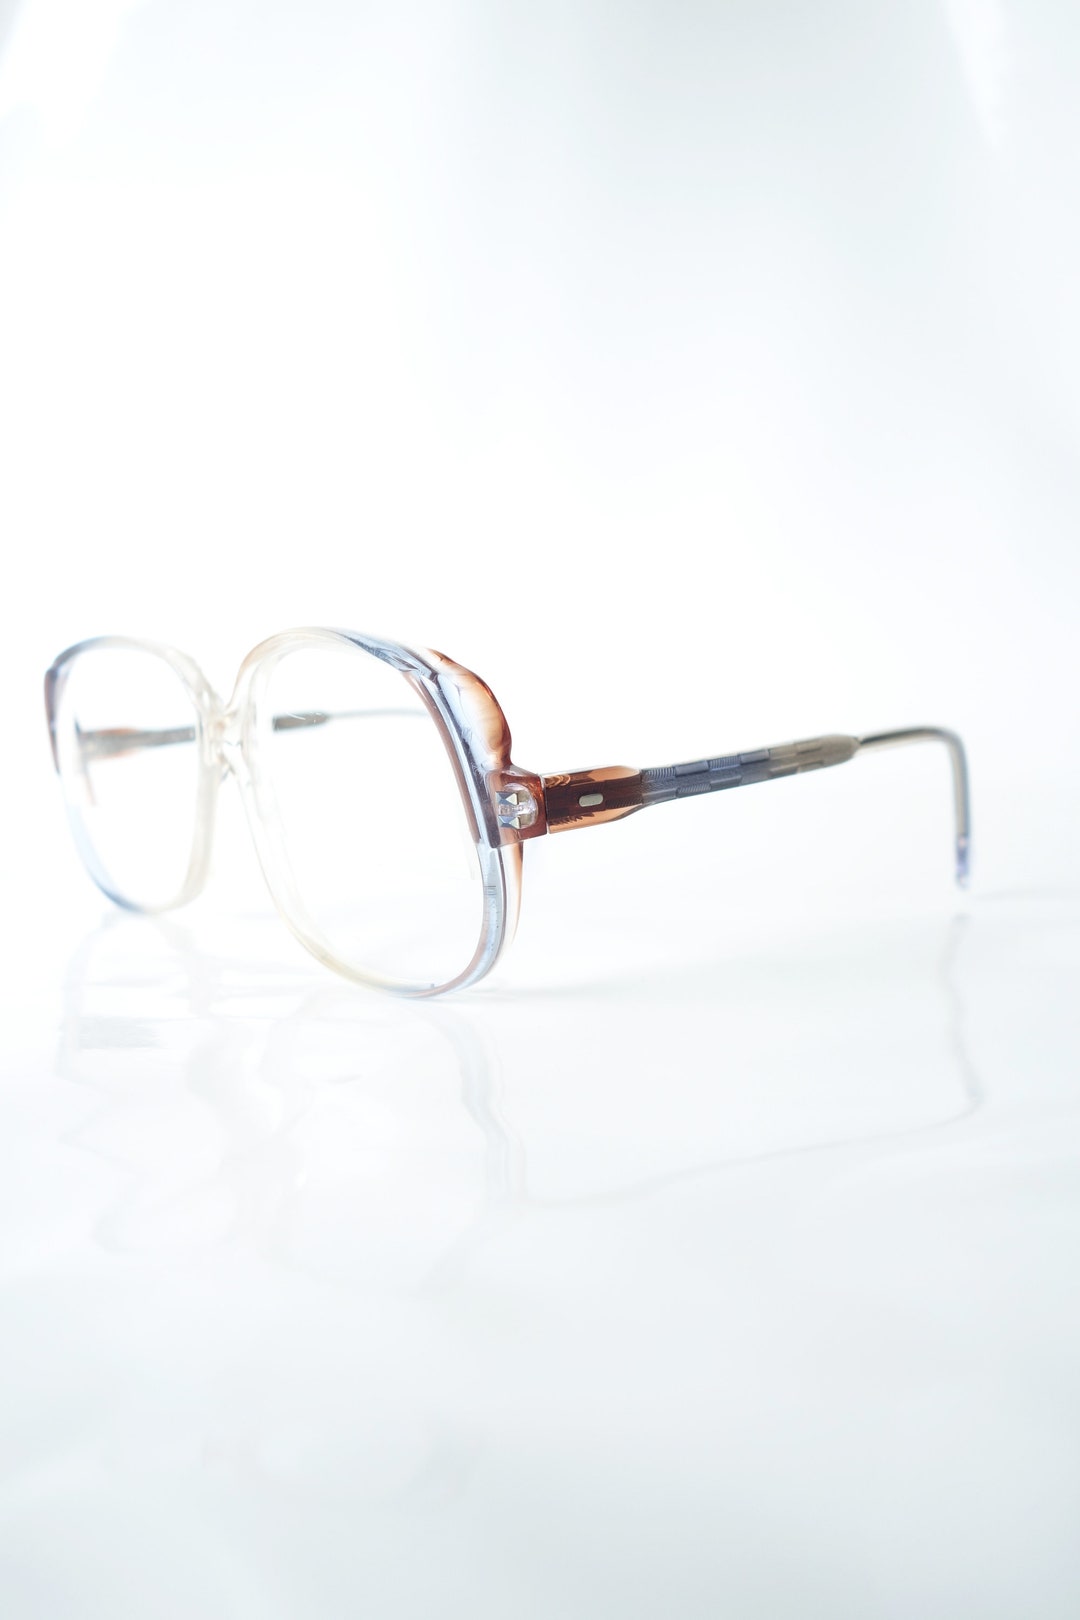 Oversized 1980s Avant Garde Eyeglasses Retro Made in France Eyeglass ...